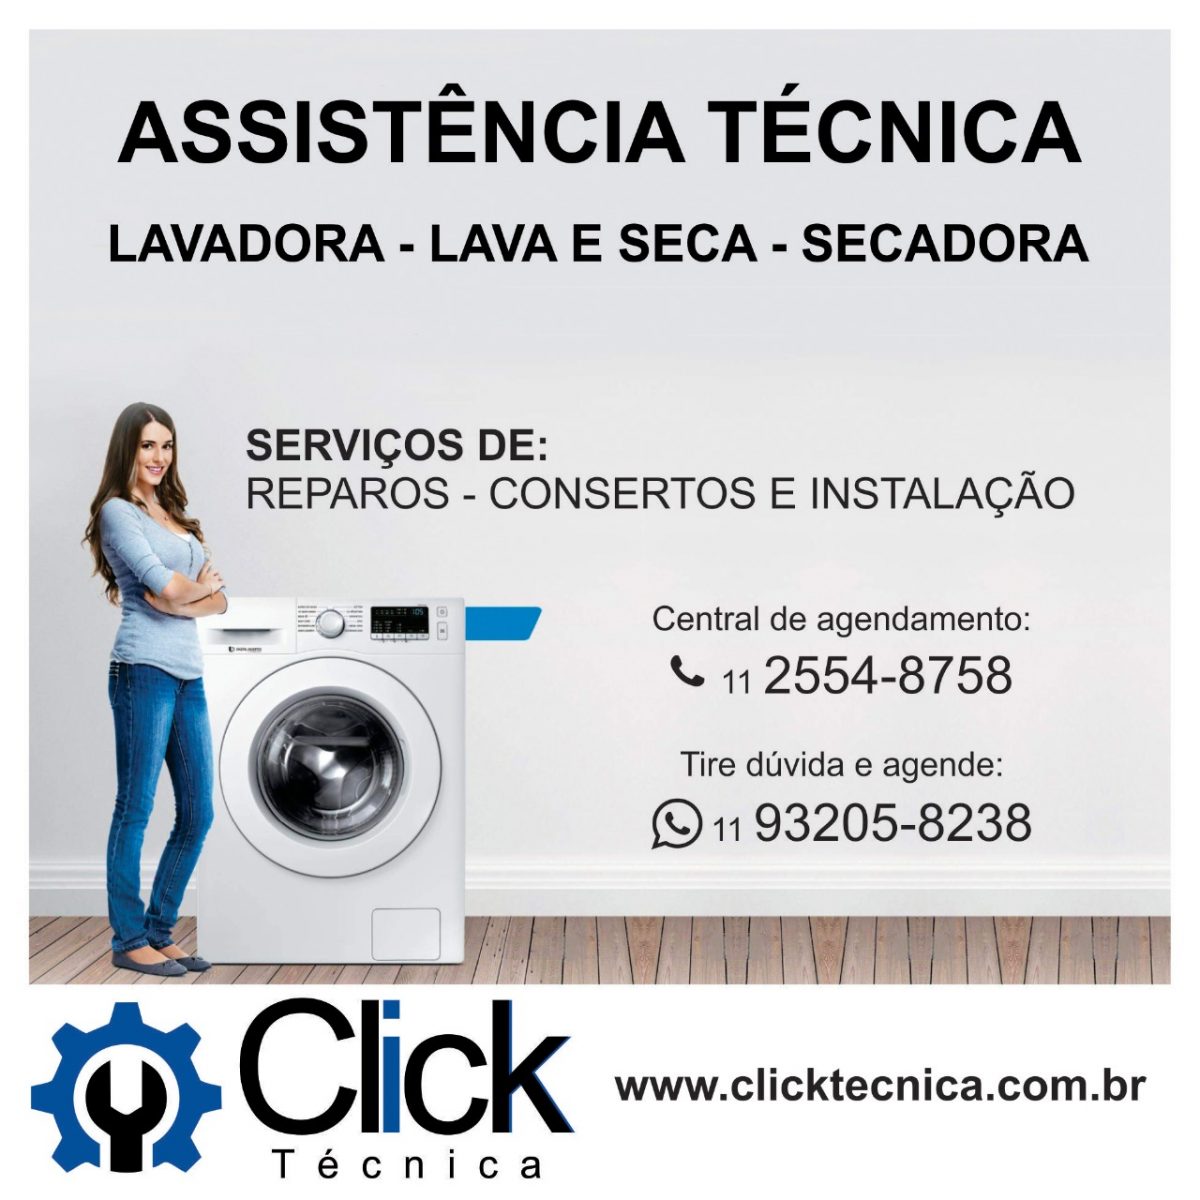 clicktecnica.com.br